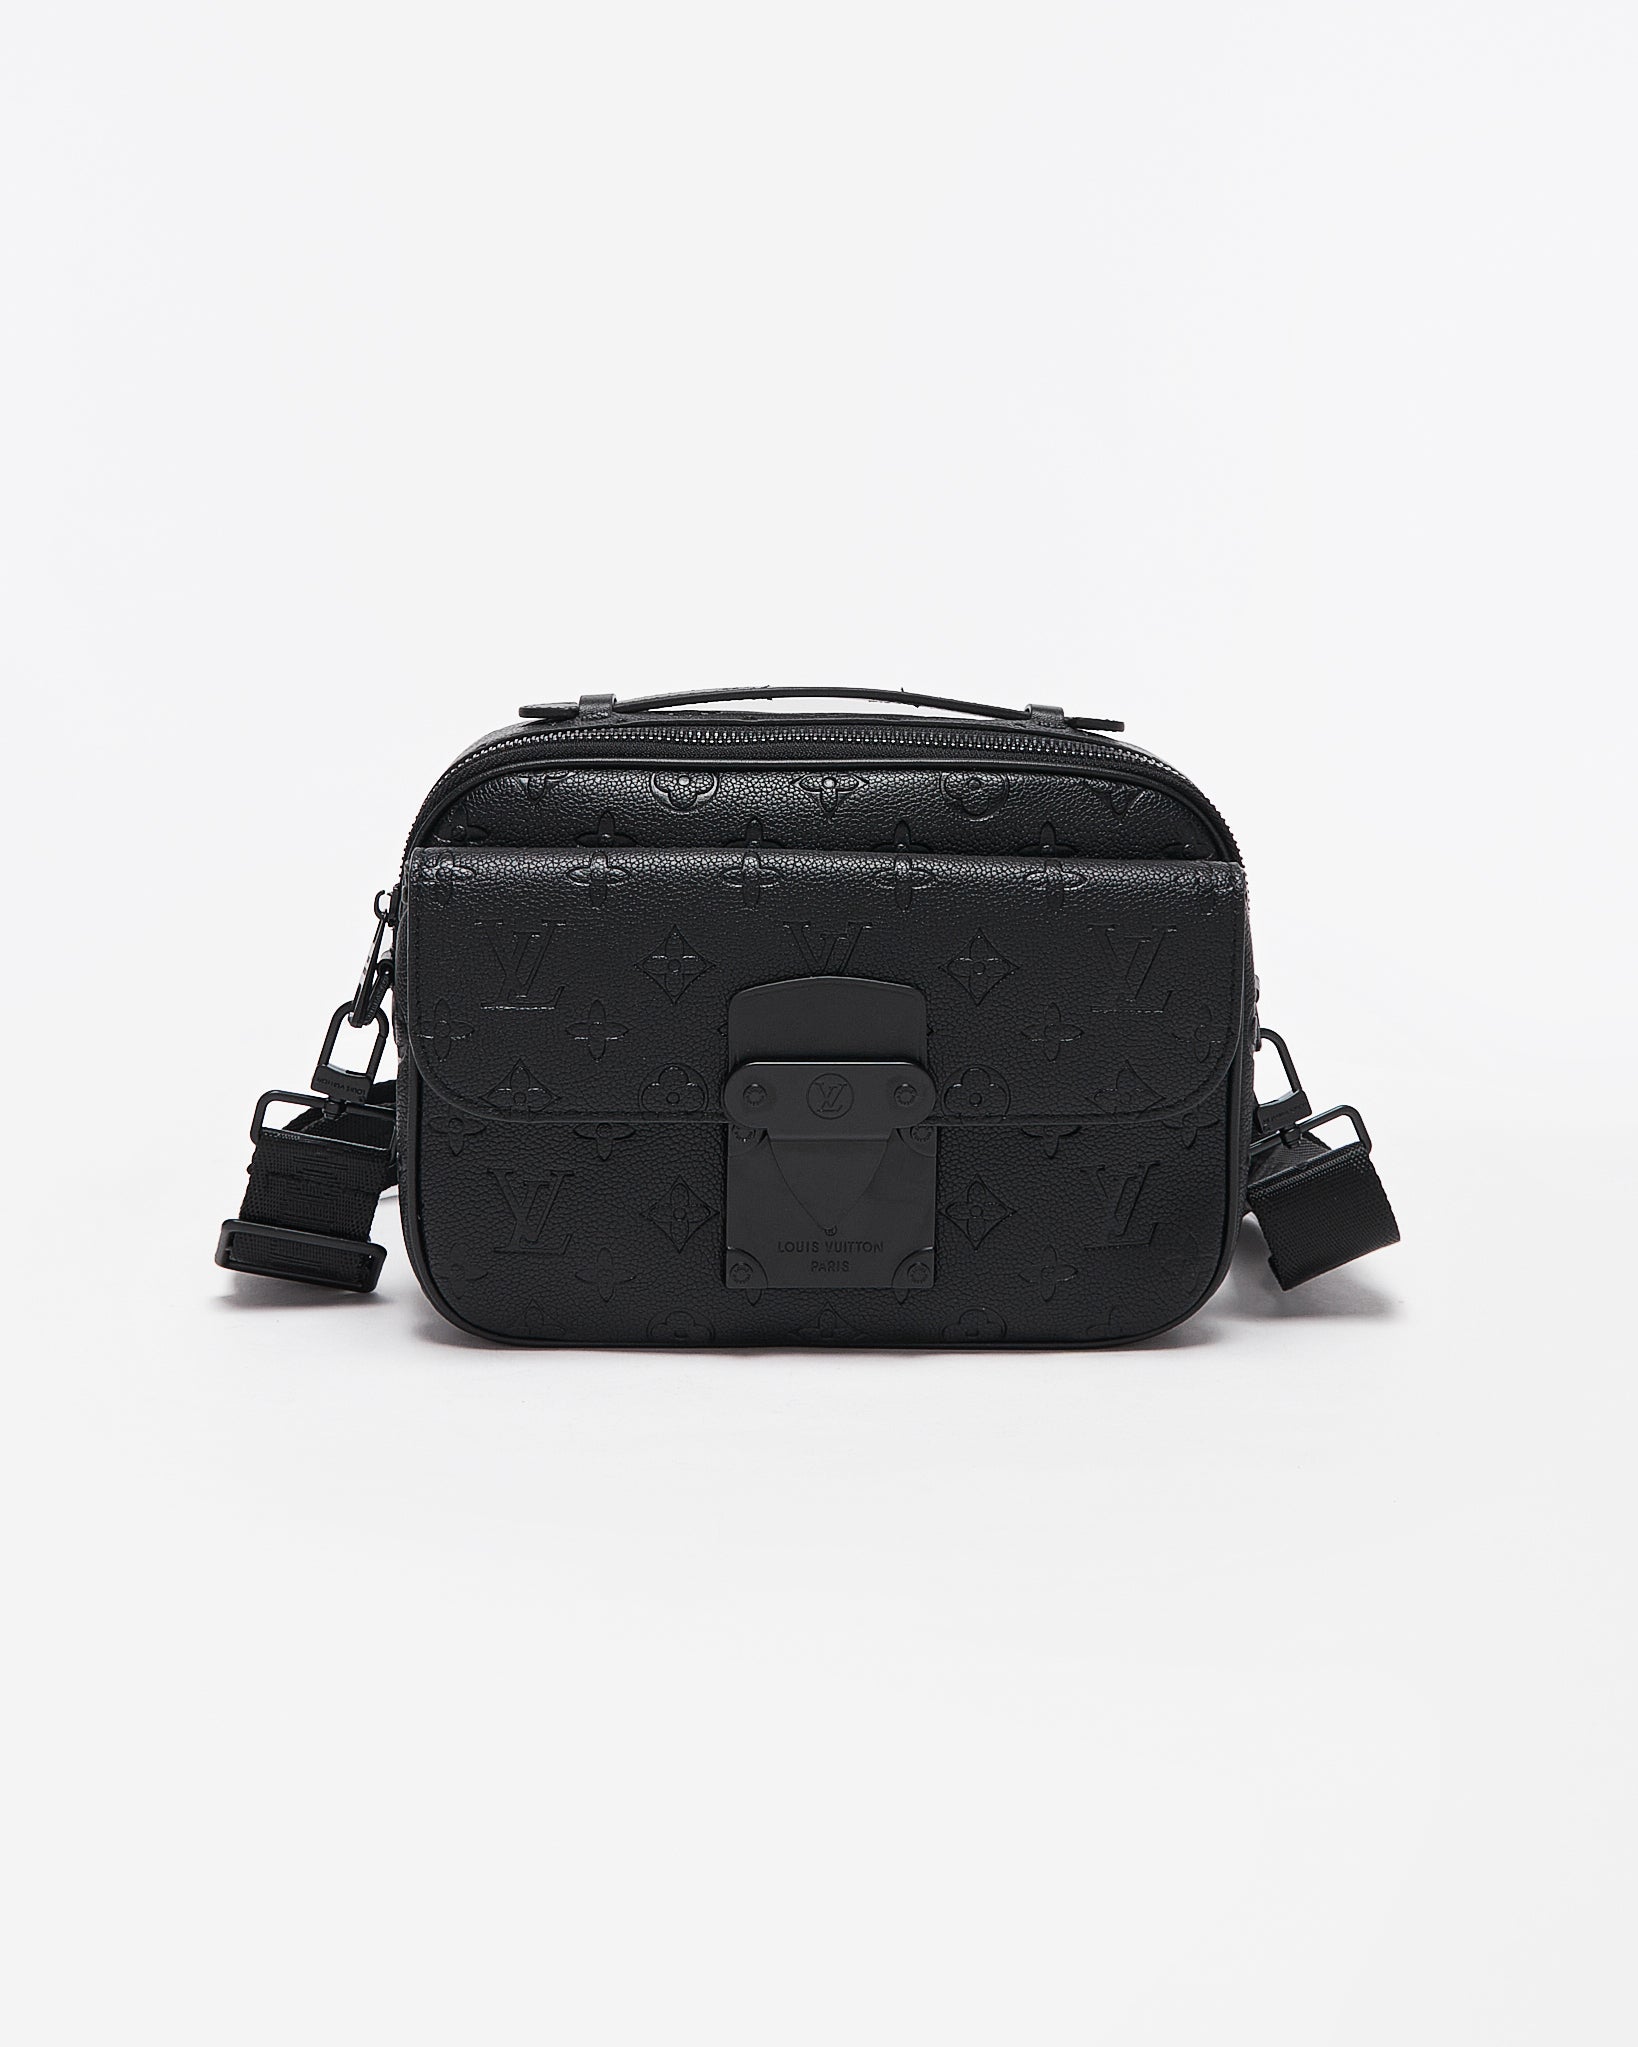 LV S-Lock Messenger Black Bag 199